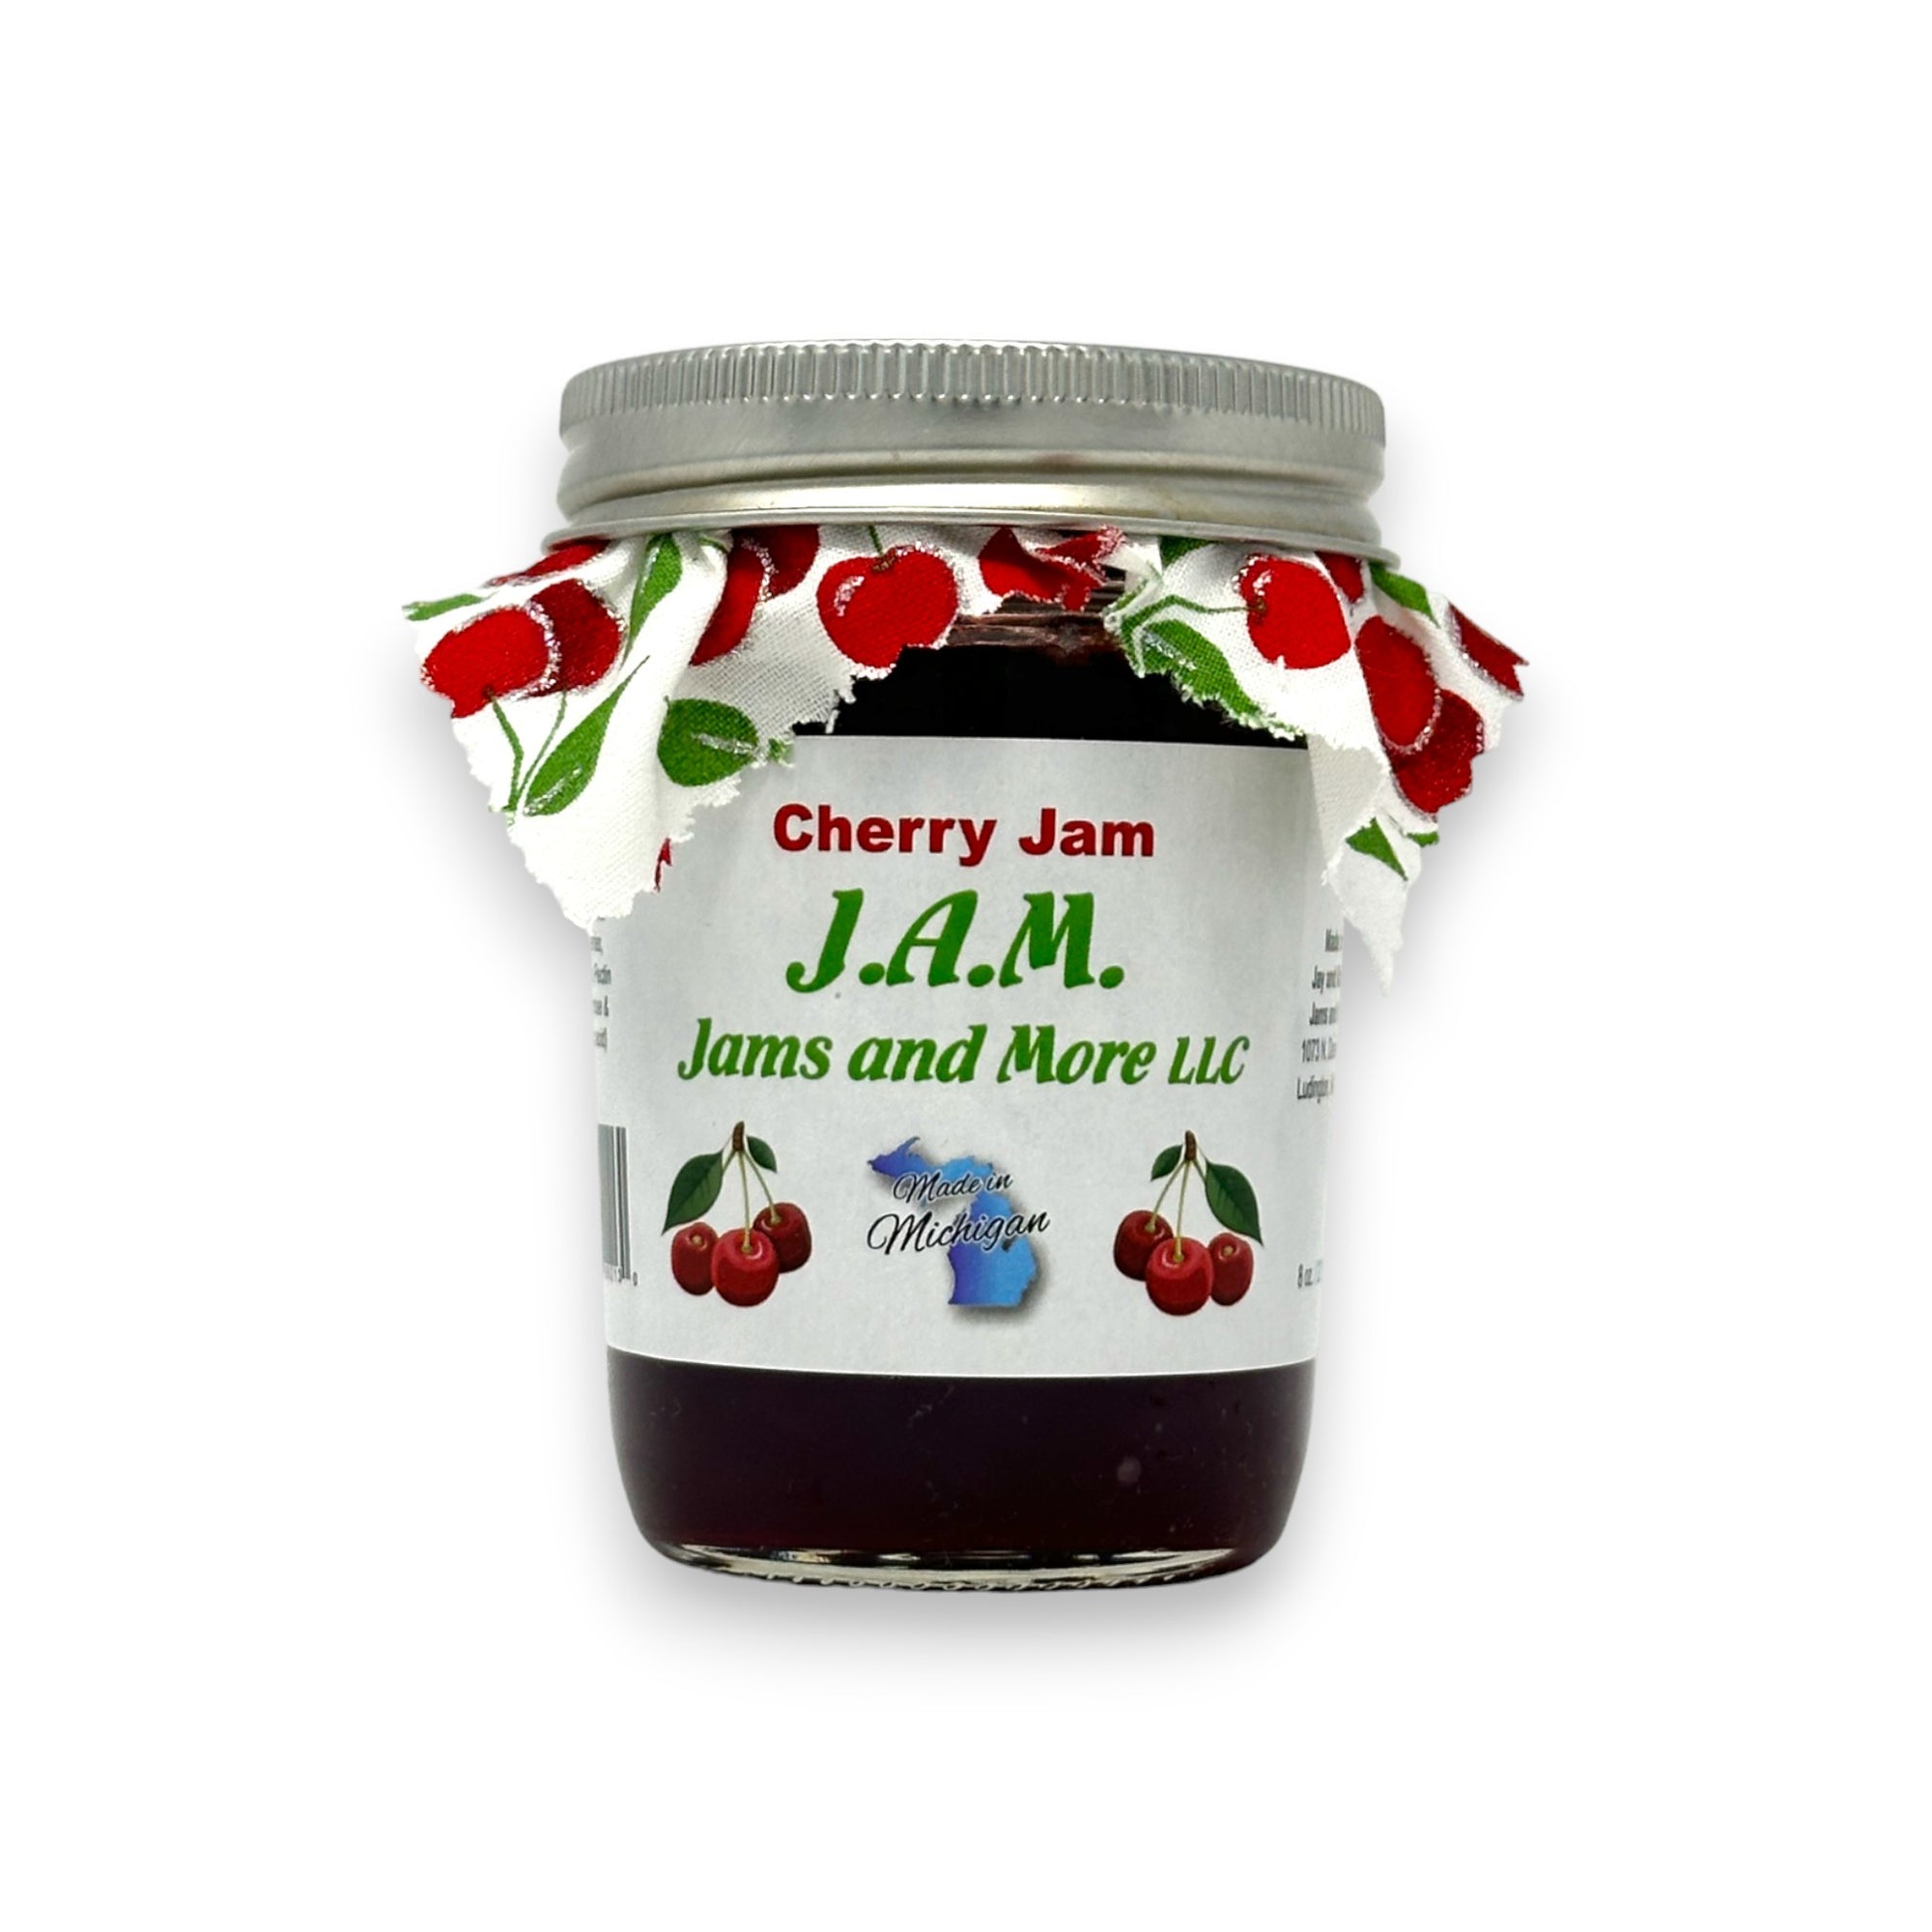 Homemade Jam - The Roadside